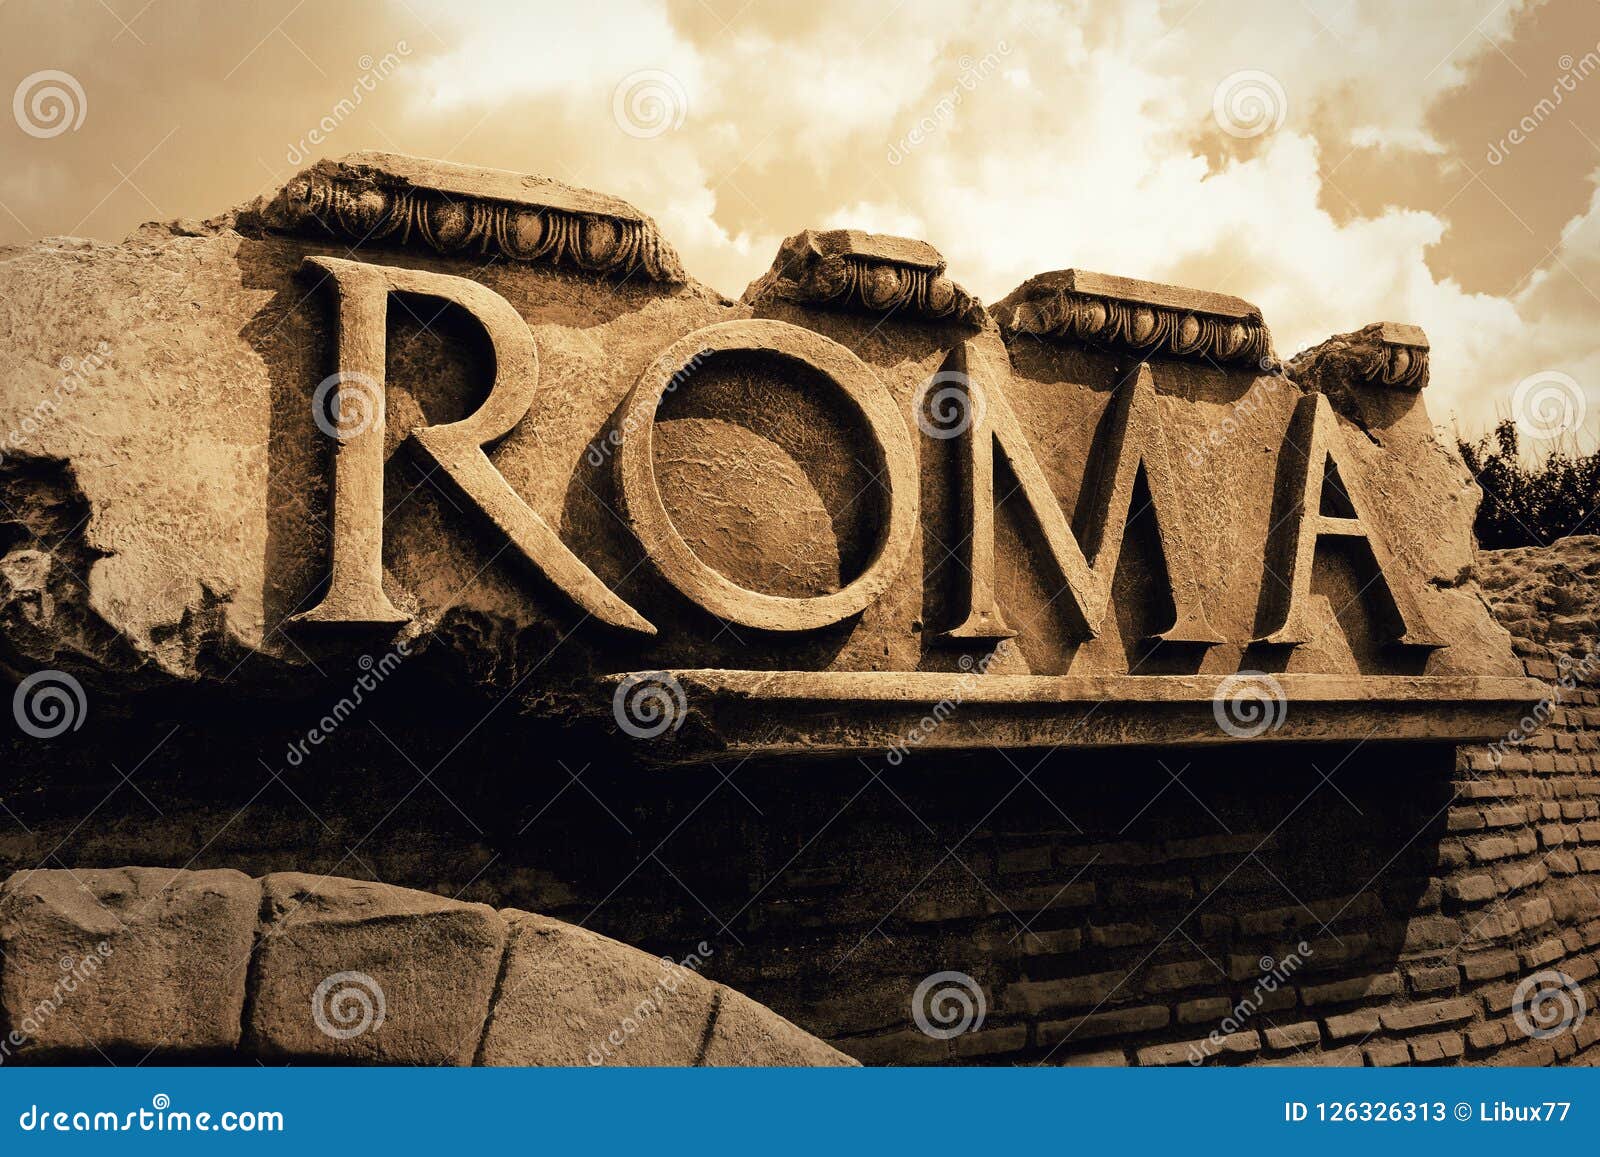 roma ancient empire text